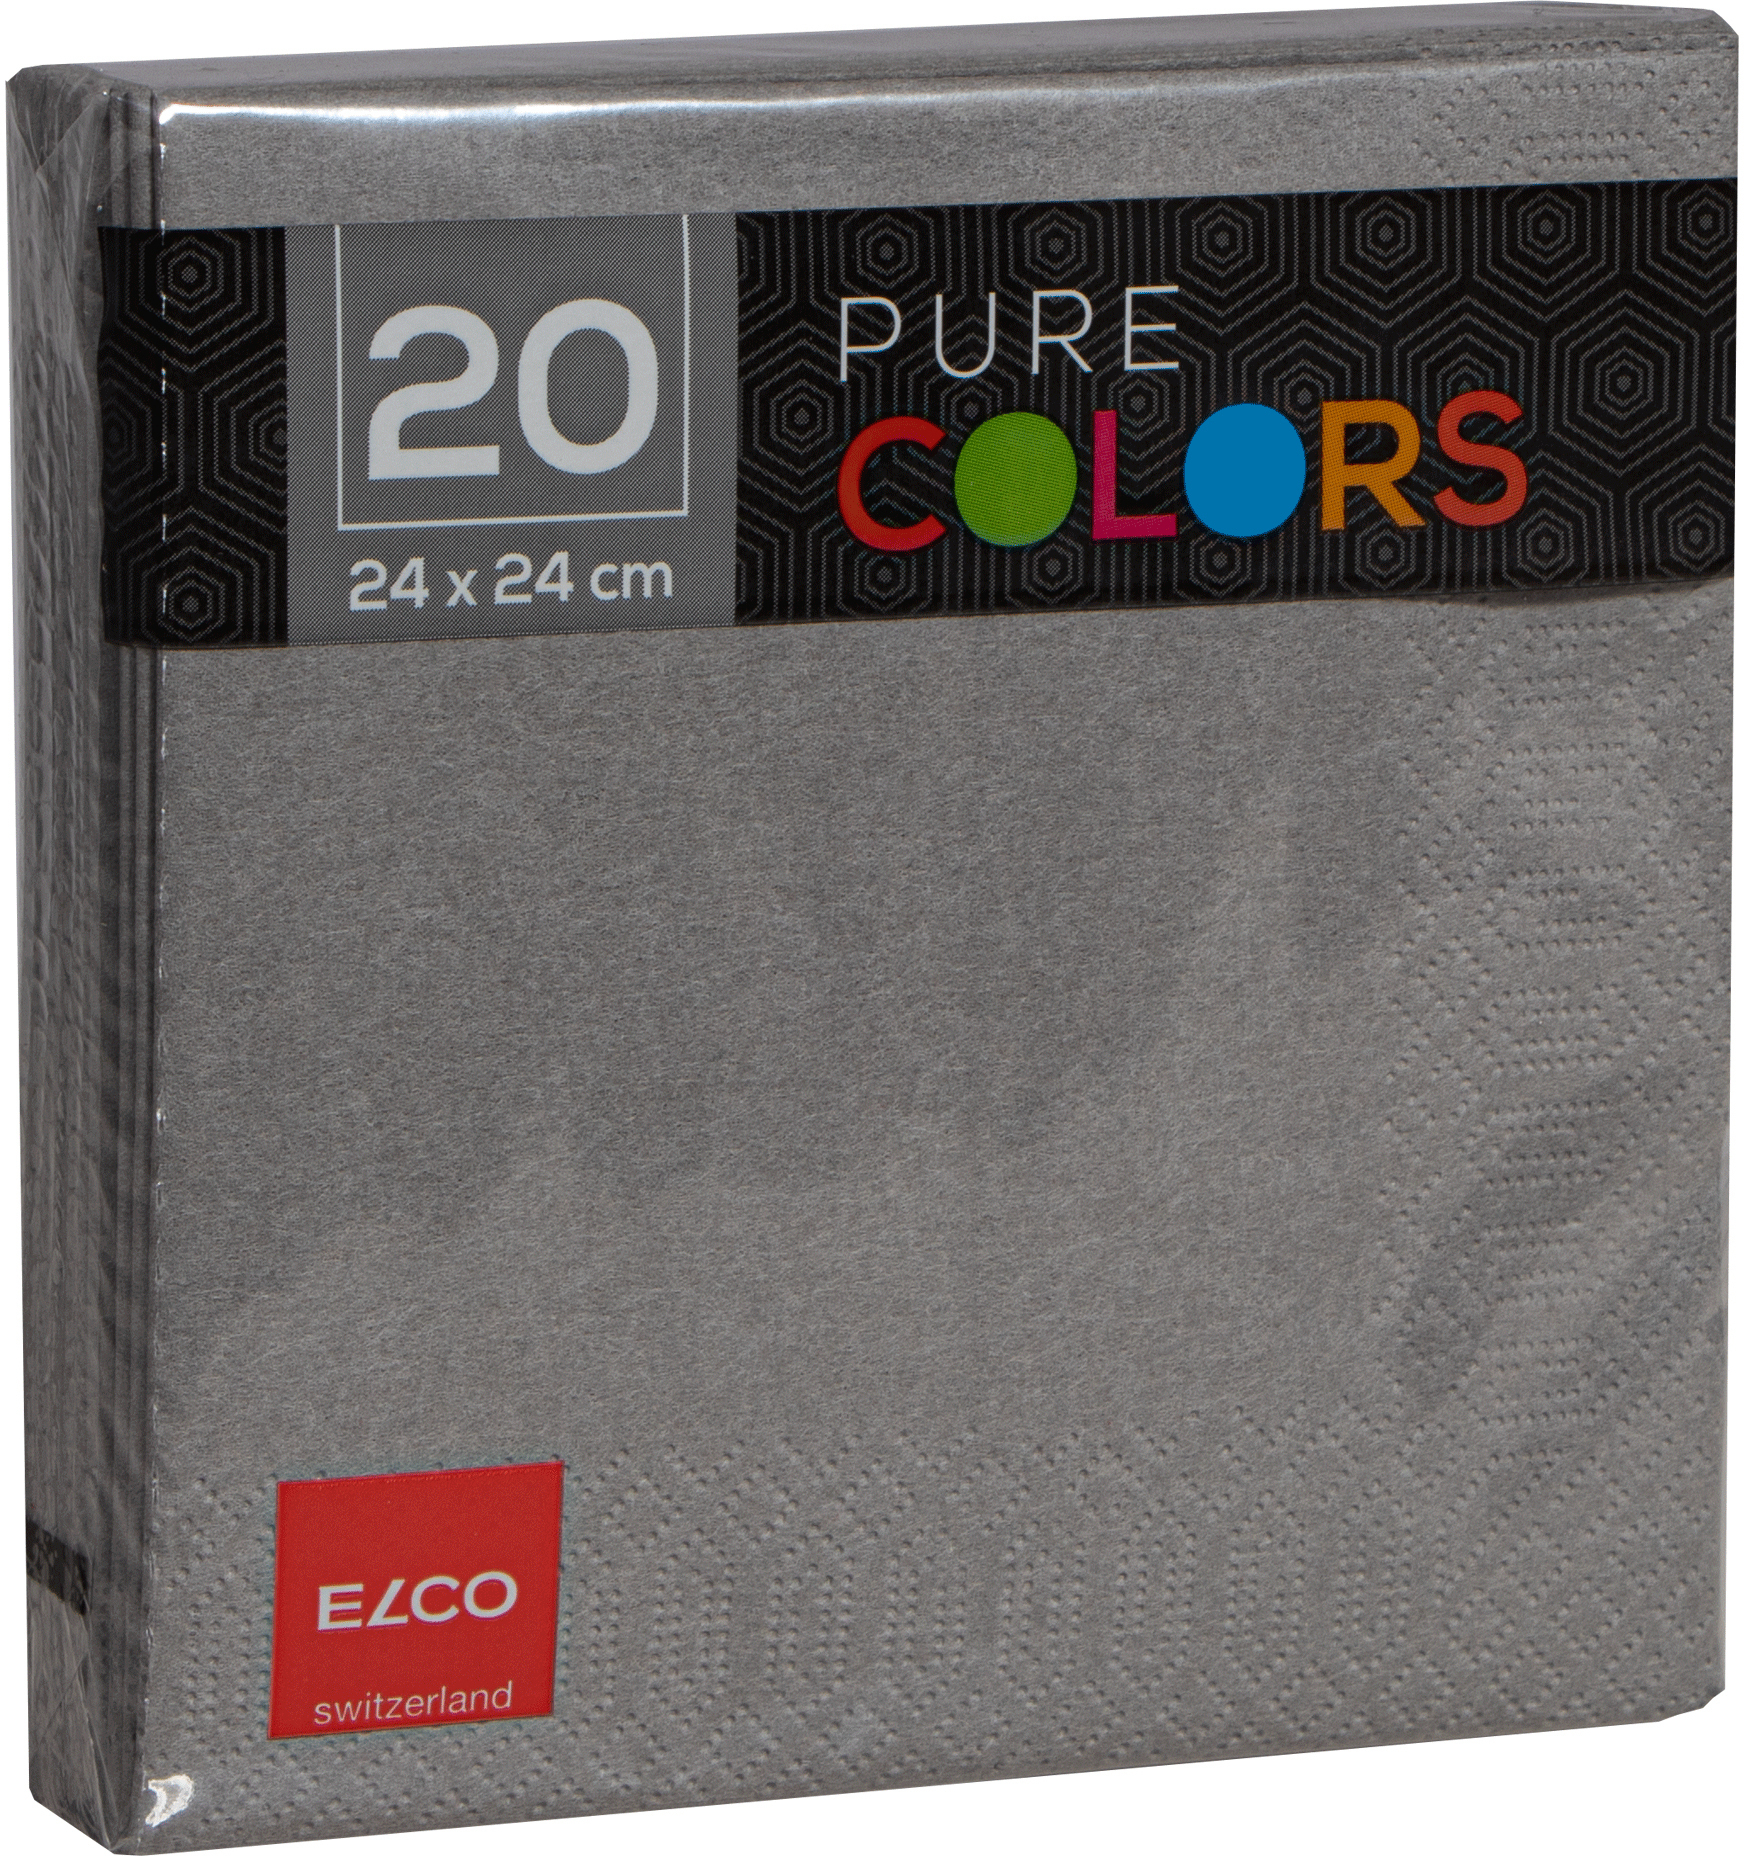 ELCO Serviettes tissue 24x24cm PC234020-011 3 plis, gris 20pcs. 3 plis, gris 20pcs.